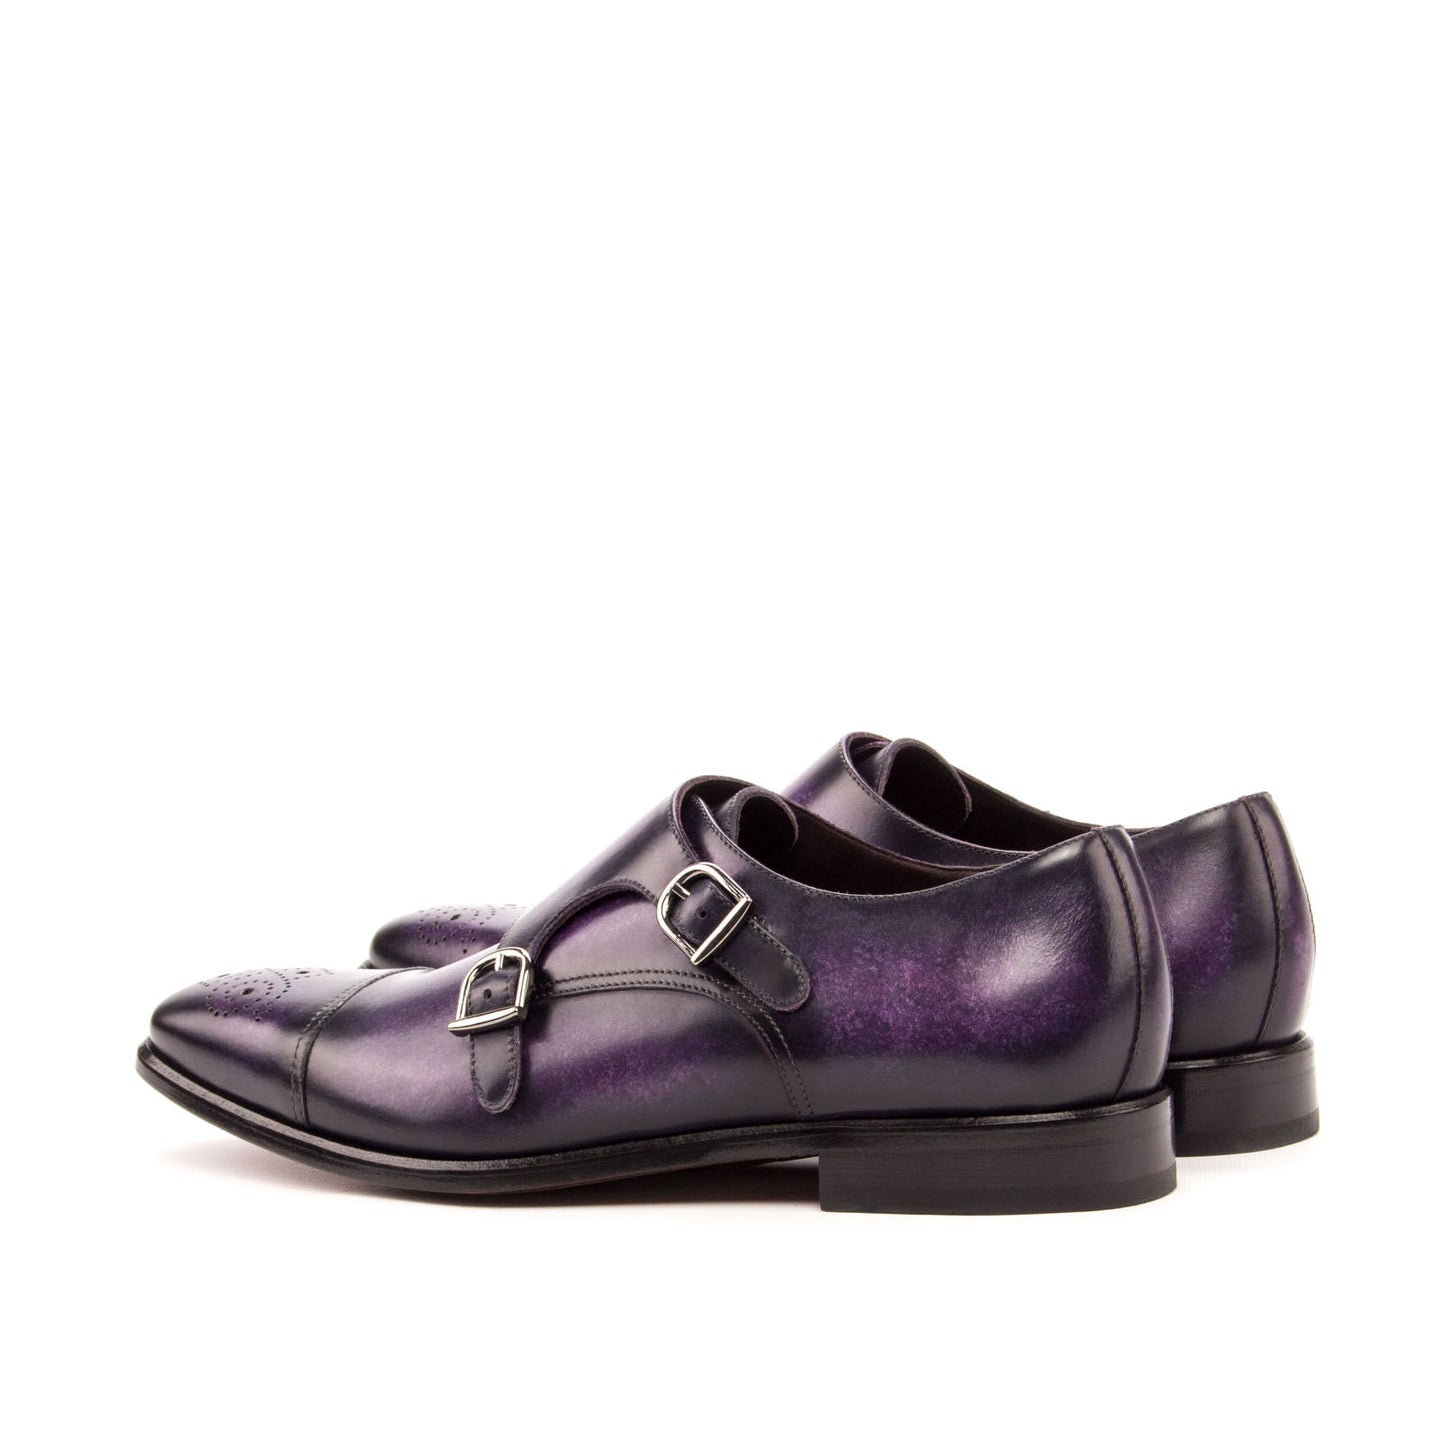 SUITCAFE Double Monk Strap Purple Patina Men's Shoe